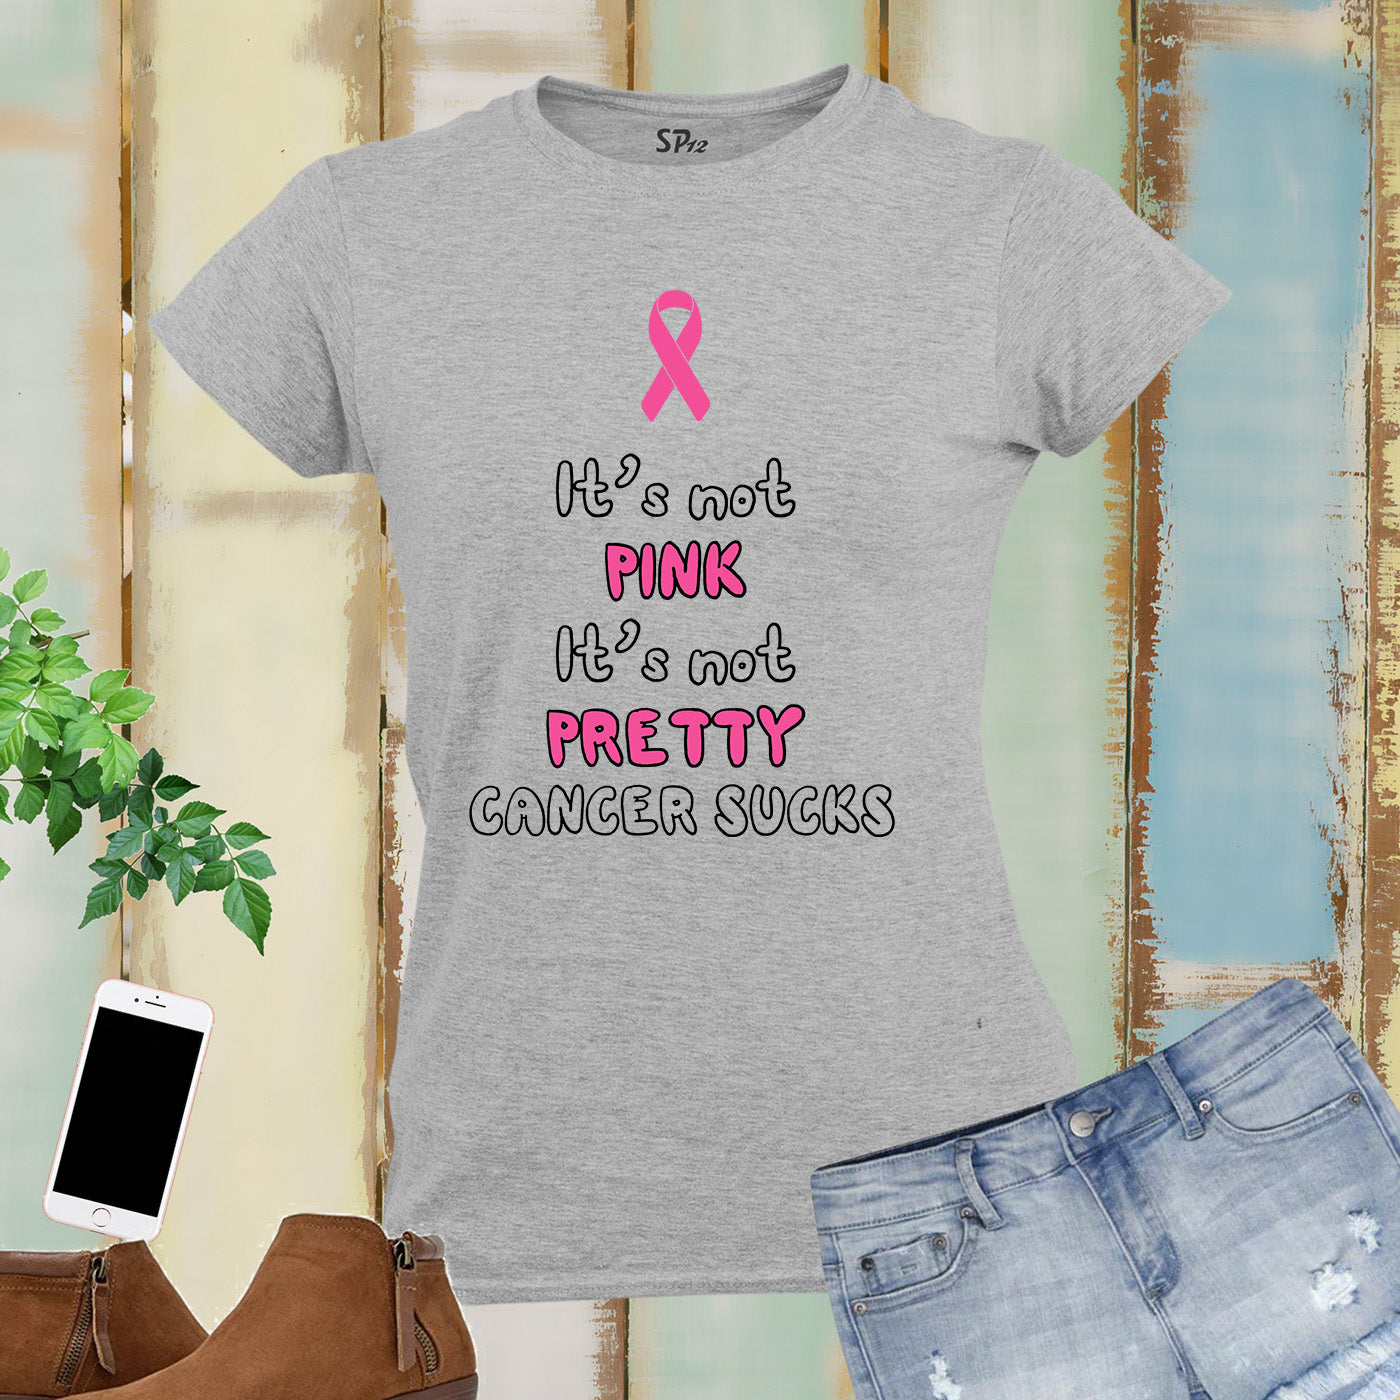 Cancer Sucks Awareness Women T Shirt